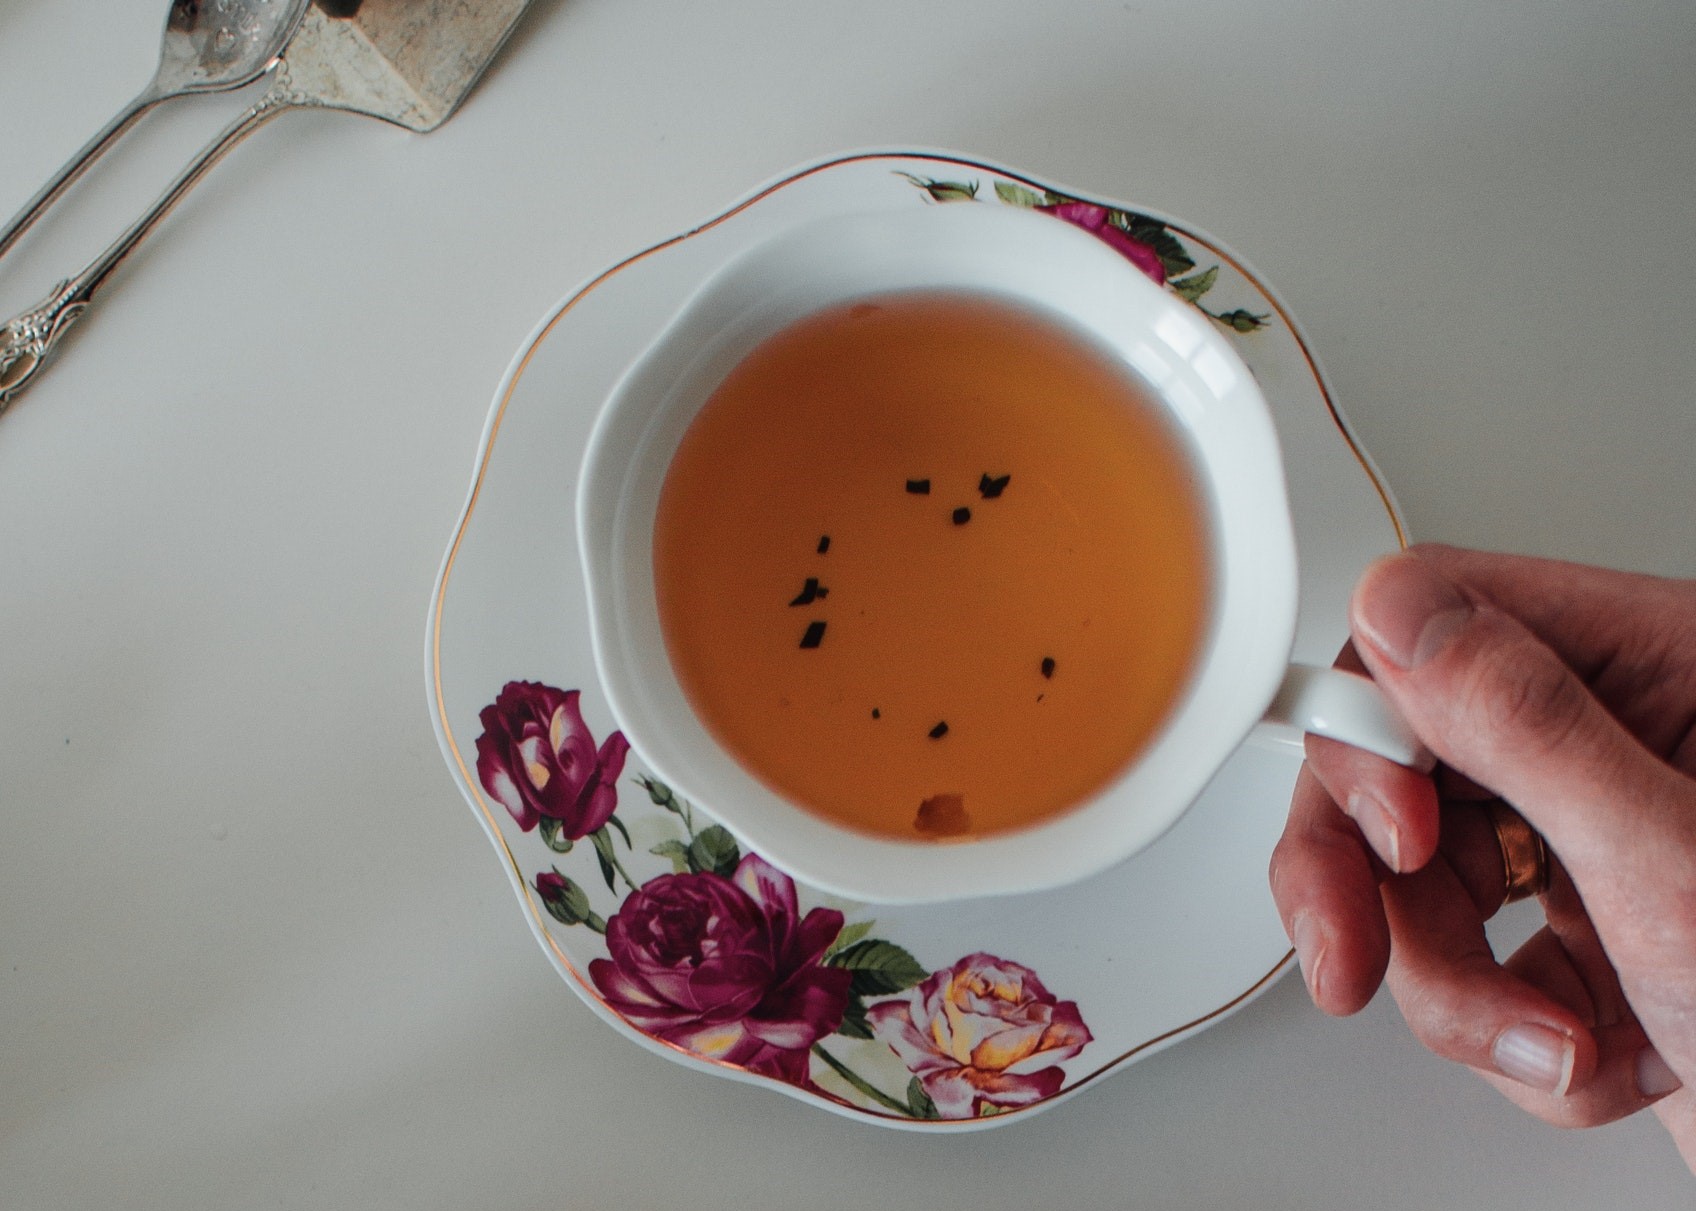 Mão de mulher segura uma xícara de chá. A xícara é de cor branca e está sobre um pirex que também é branco e possui decoração com rosas. 